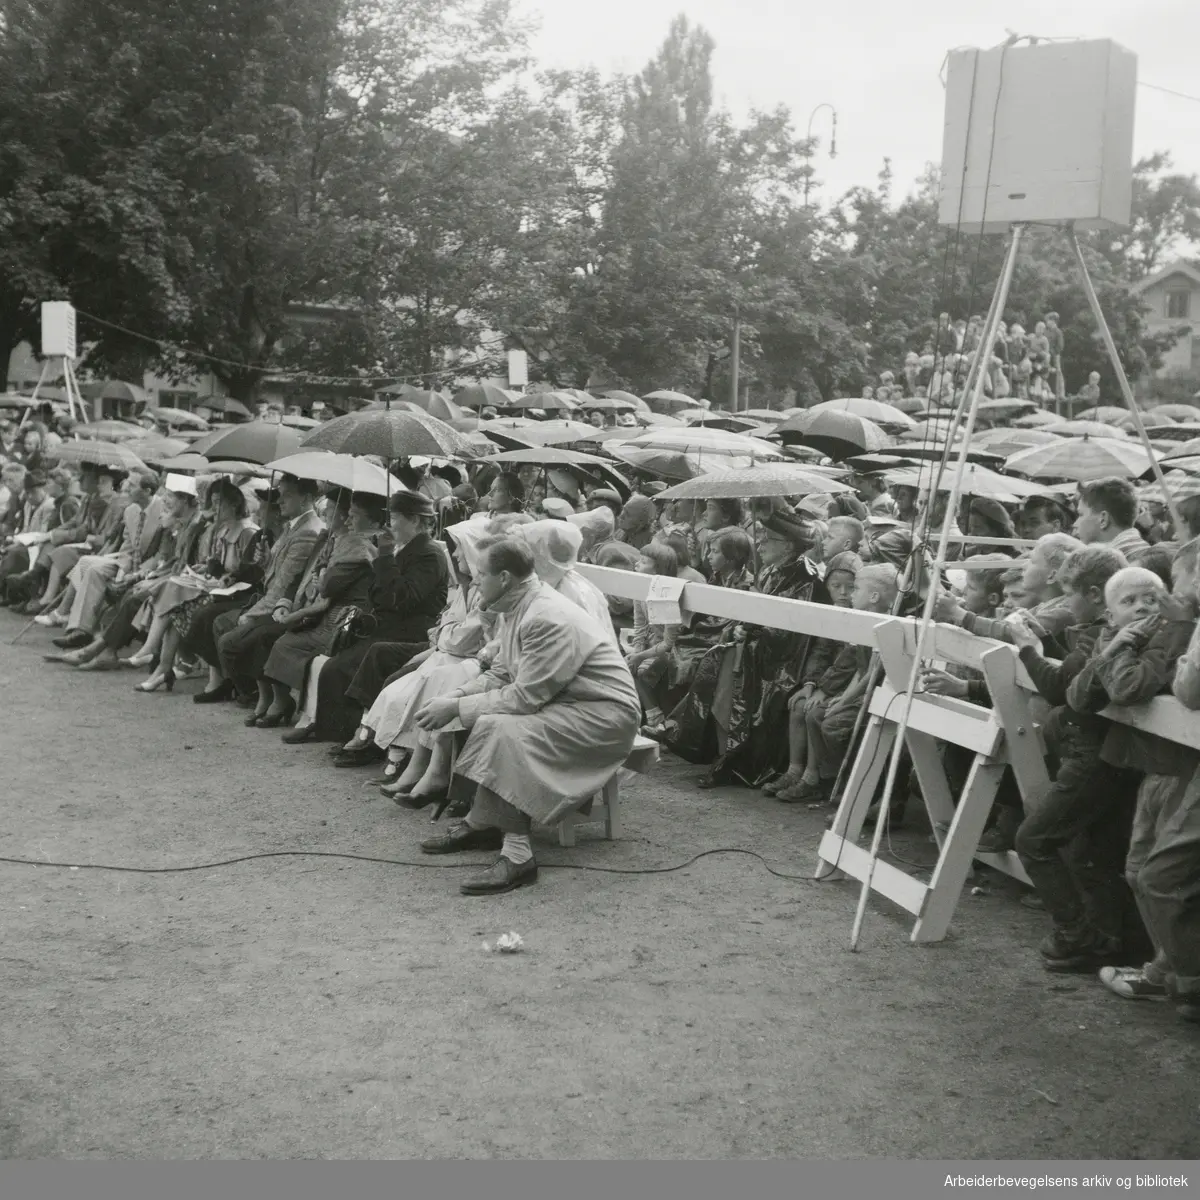 Oslo kommunes parkkvelder. Premiere på operettekavalkaden "Fra smilets land og riker" på Vestkanttorget, 28. Juni 1954.